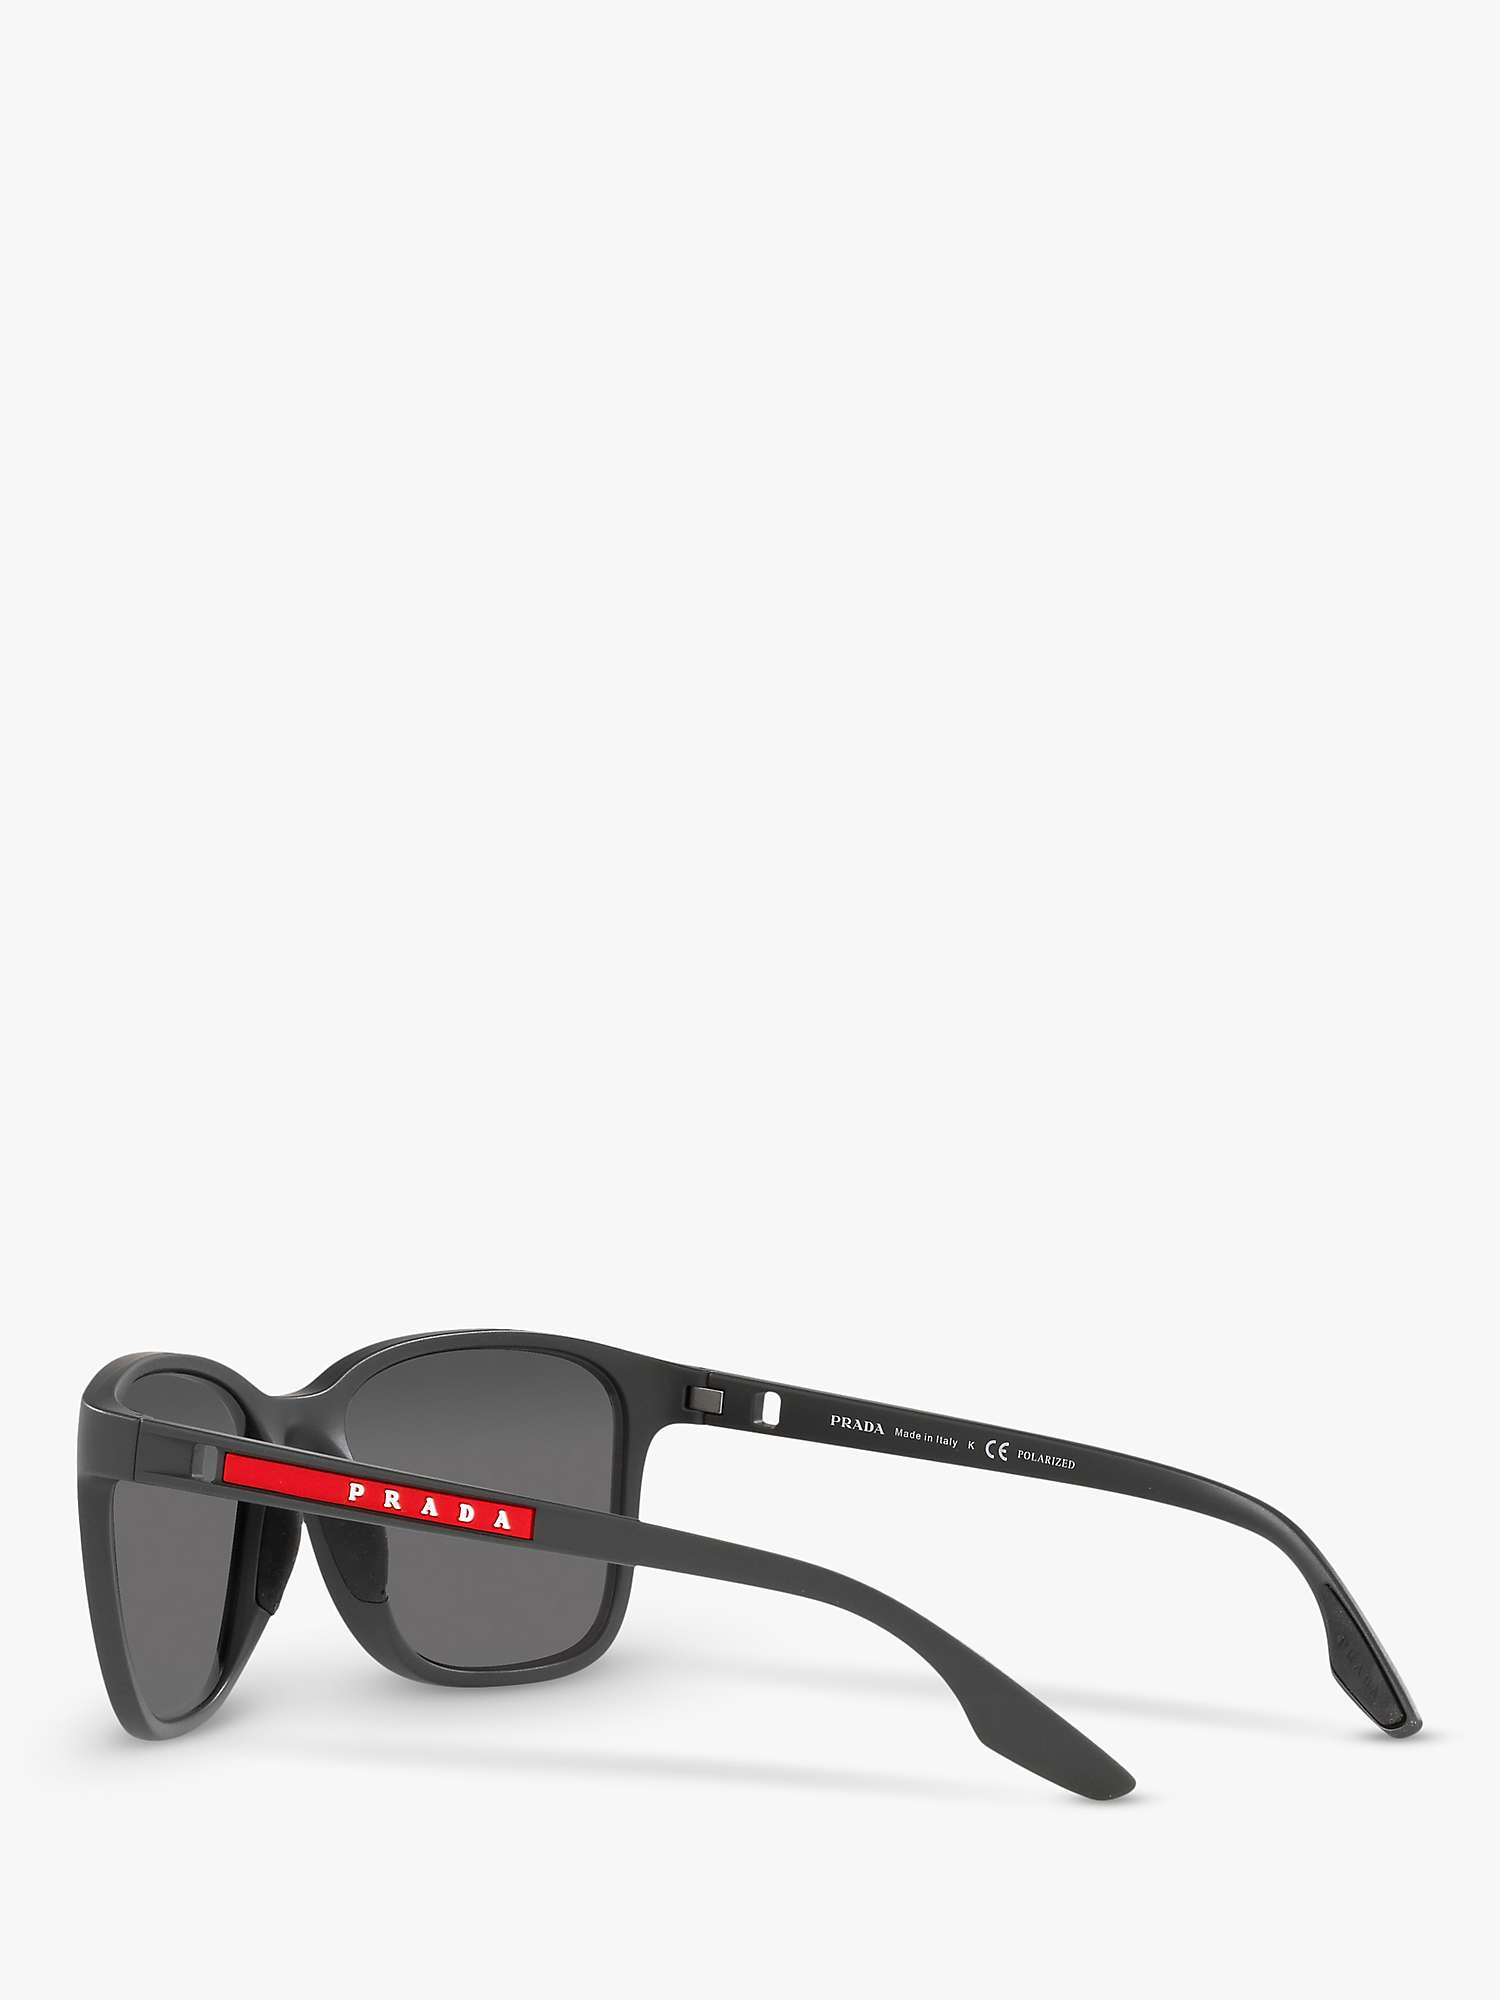 Buy Prada Linea Rossa PS 02WS Men's Pillow Polarised Sunglasses Online at johnlewis.com